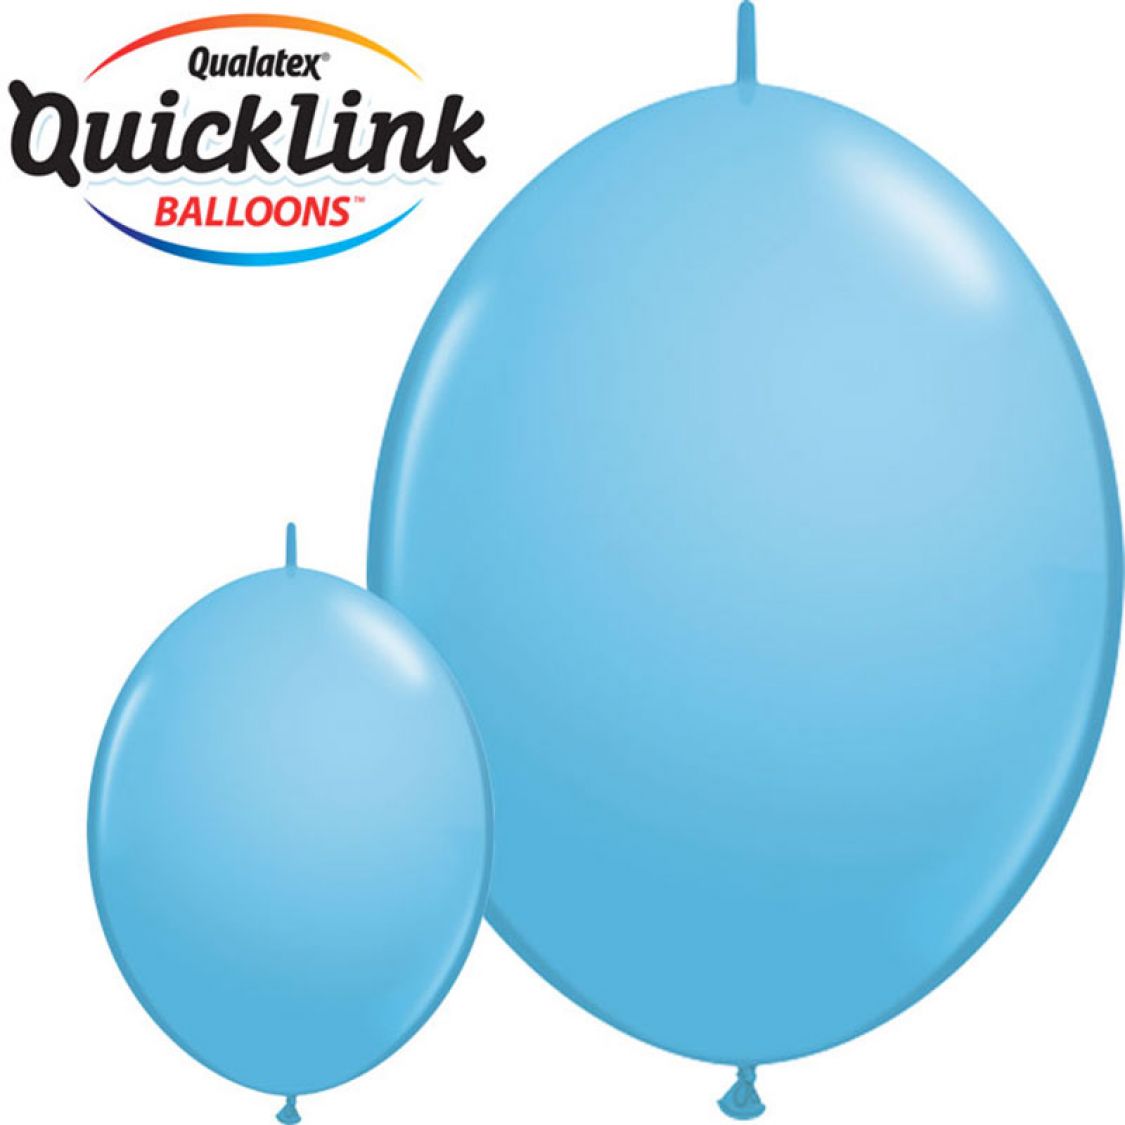 Ballon Quicklink Pale Blue (Bleu Pale)